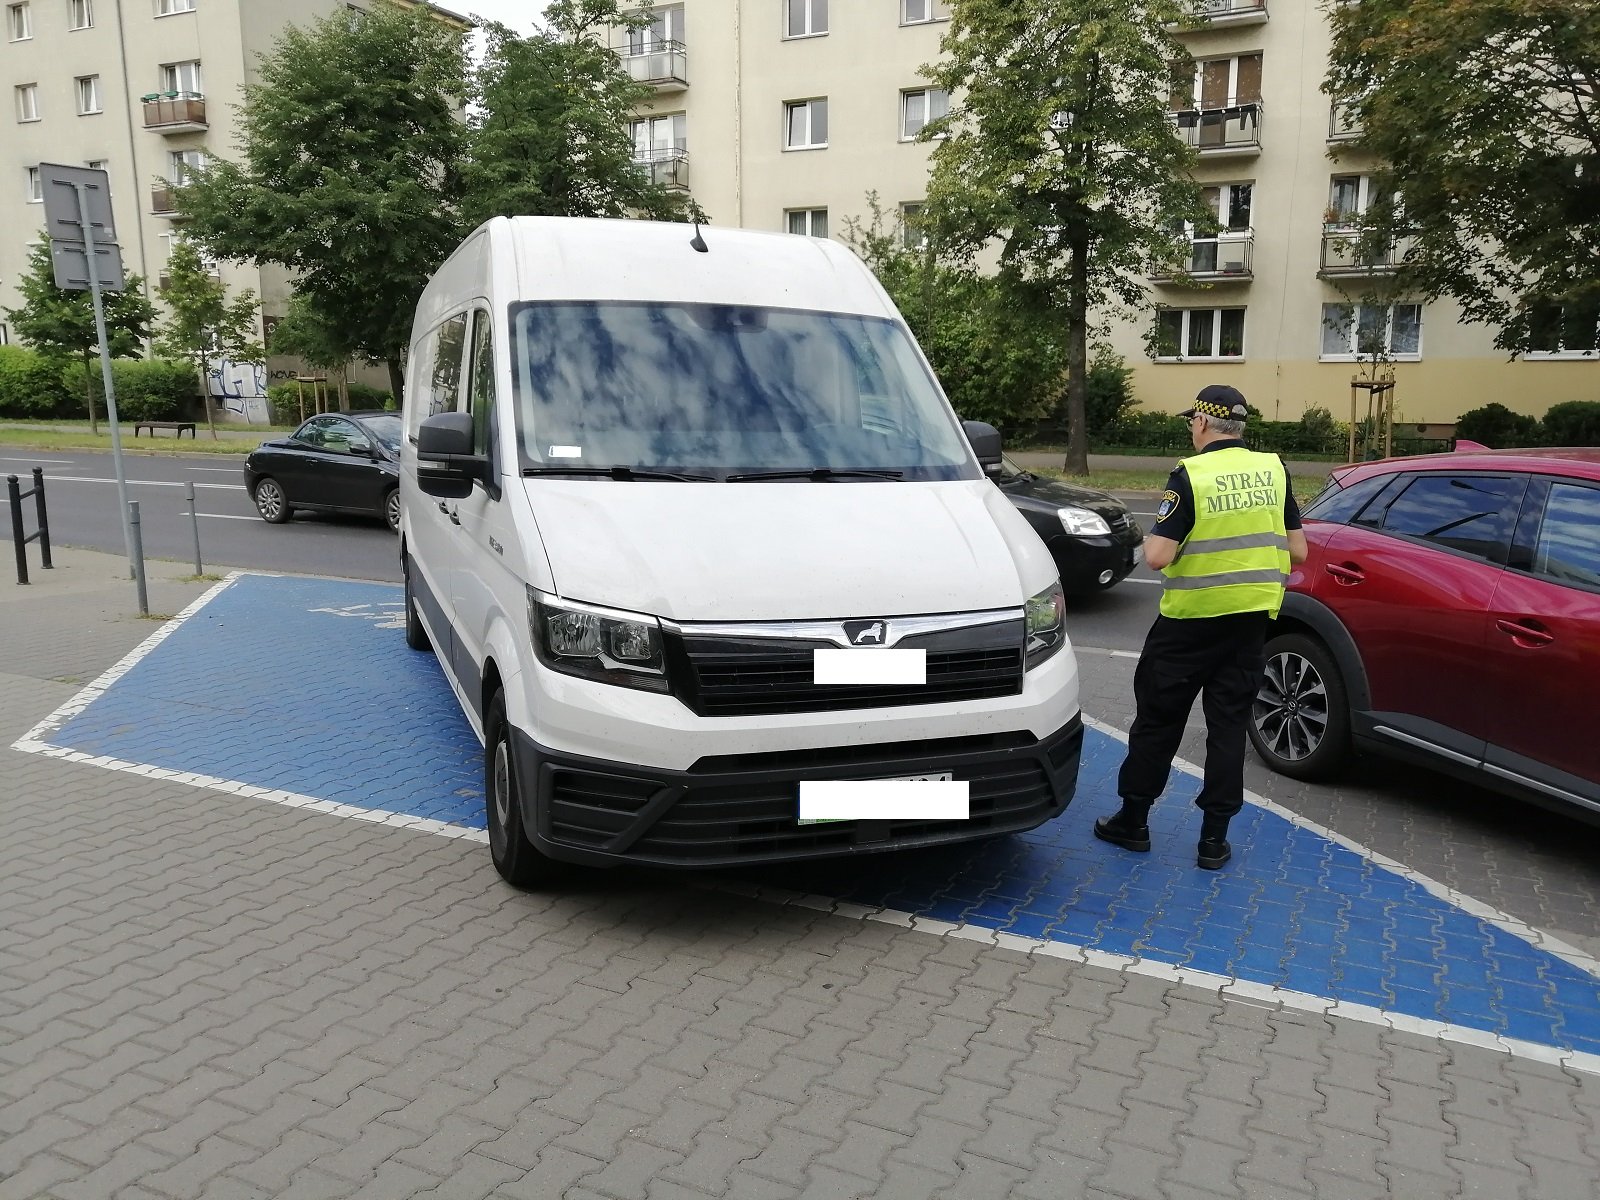 Wyjątkowo drogie parkowanie dla kierowcy z ul. Grochowskiej